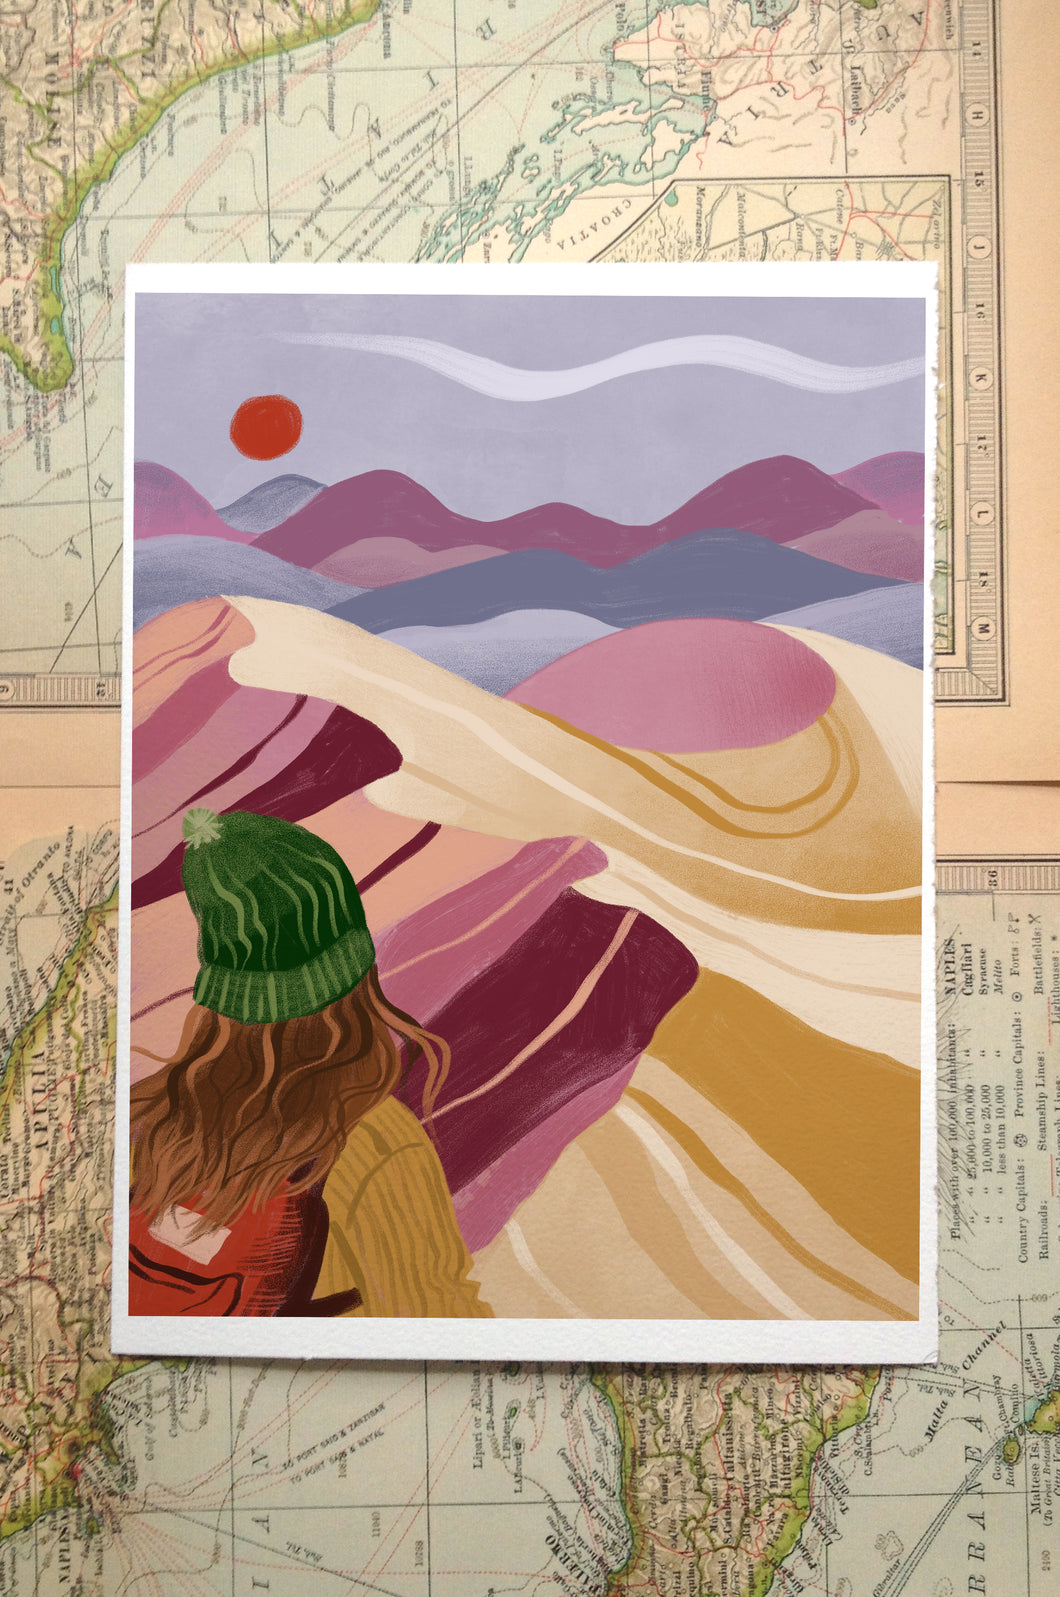 Inspiring Scenes: Desert Dunes Illustration Print